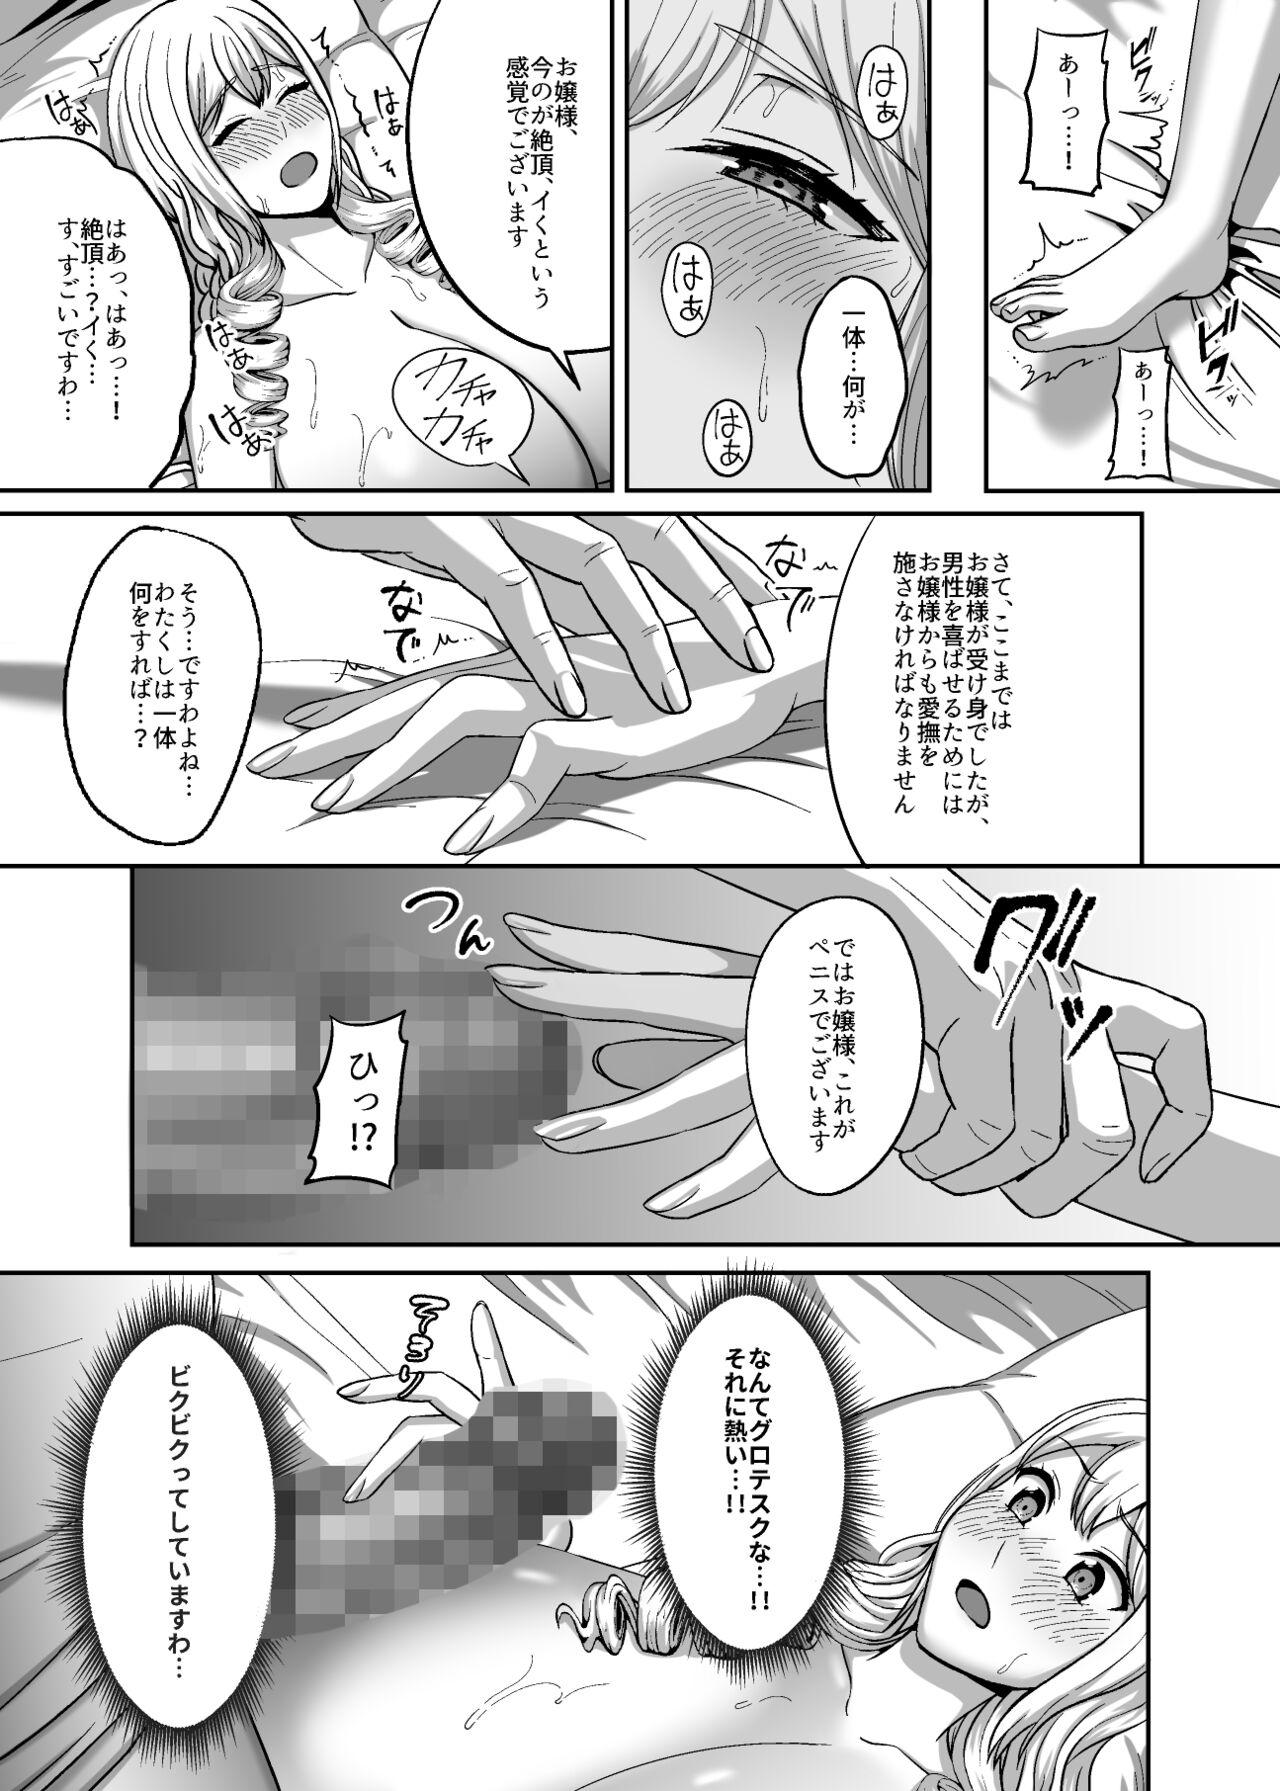 Scandal Ichiryuu no Lady wa Seikoui no Gijutsu mo Ichiryuu denakute wa - Original Reverse Cowgirl - Page 10